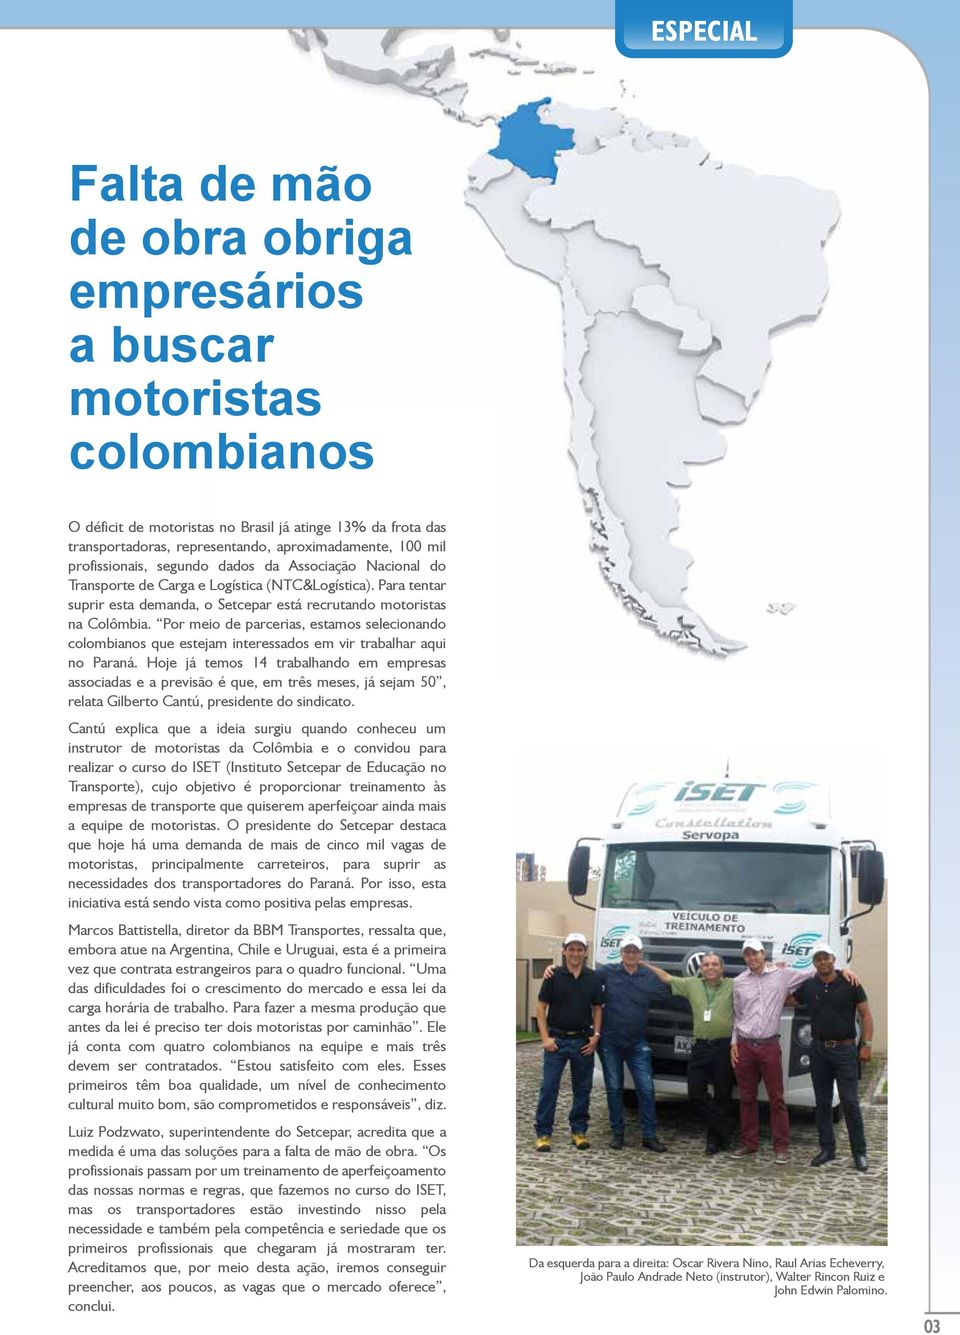 Por meio de parcerias, estamos selecionando colombianos que estejam interessados em vir trabalhar aqui no Paraná.